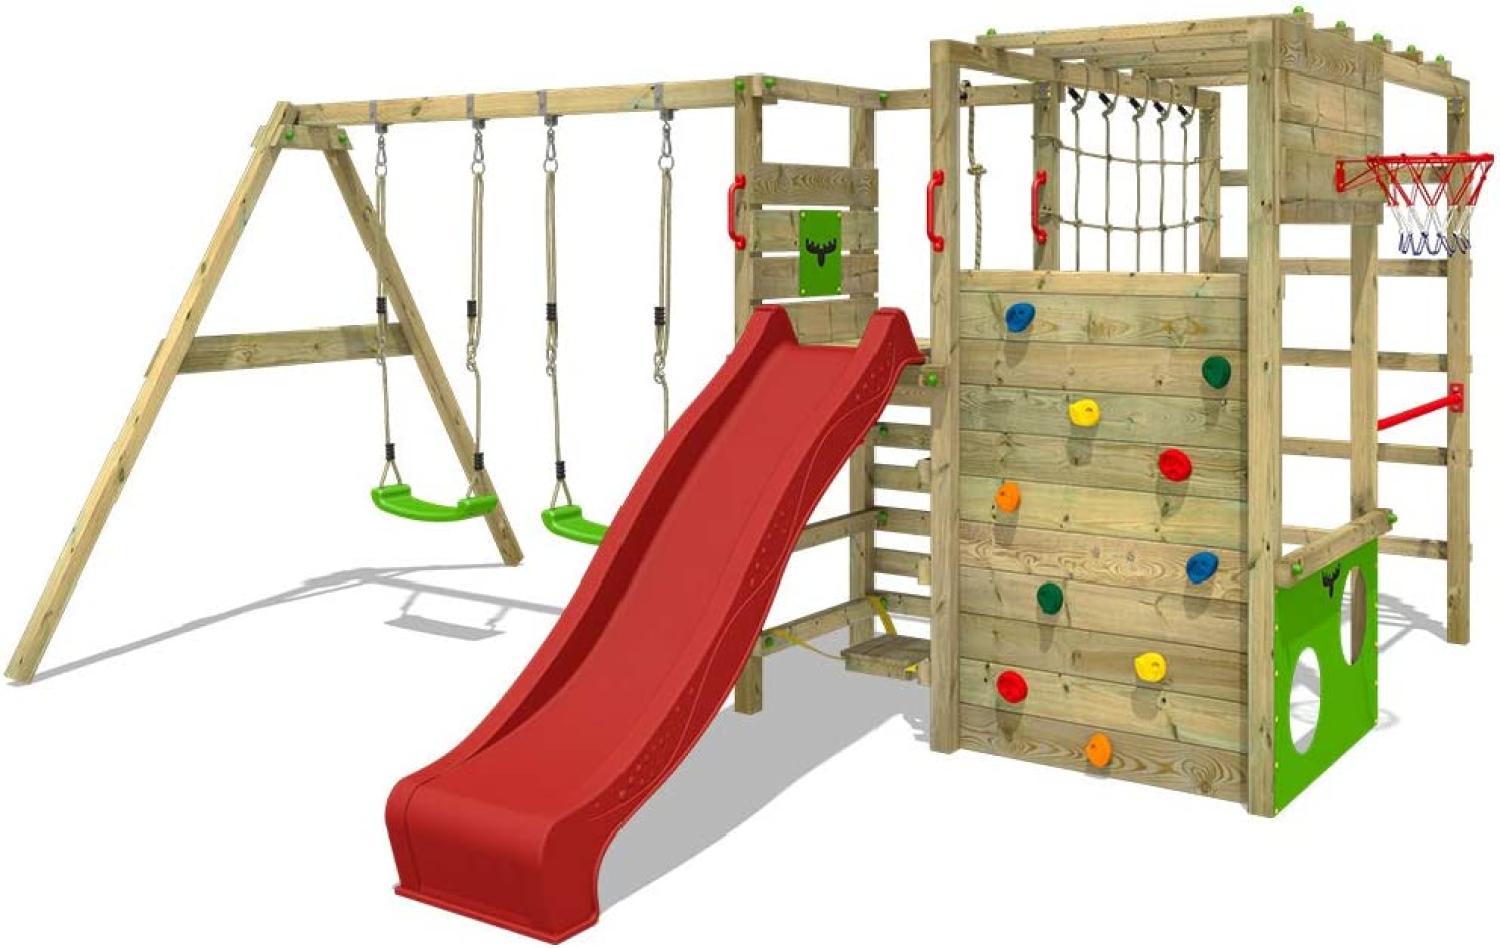 FATMOOSE Klettergerüst Spielturm ActionArena mit Schaukel & roter Rutsche, Gartenspielgerät mit Leiter & Spiel-Zubehör Bild 1